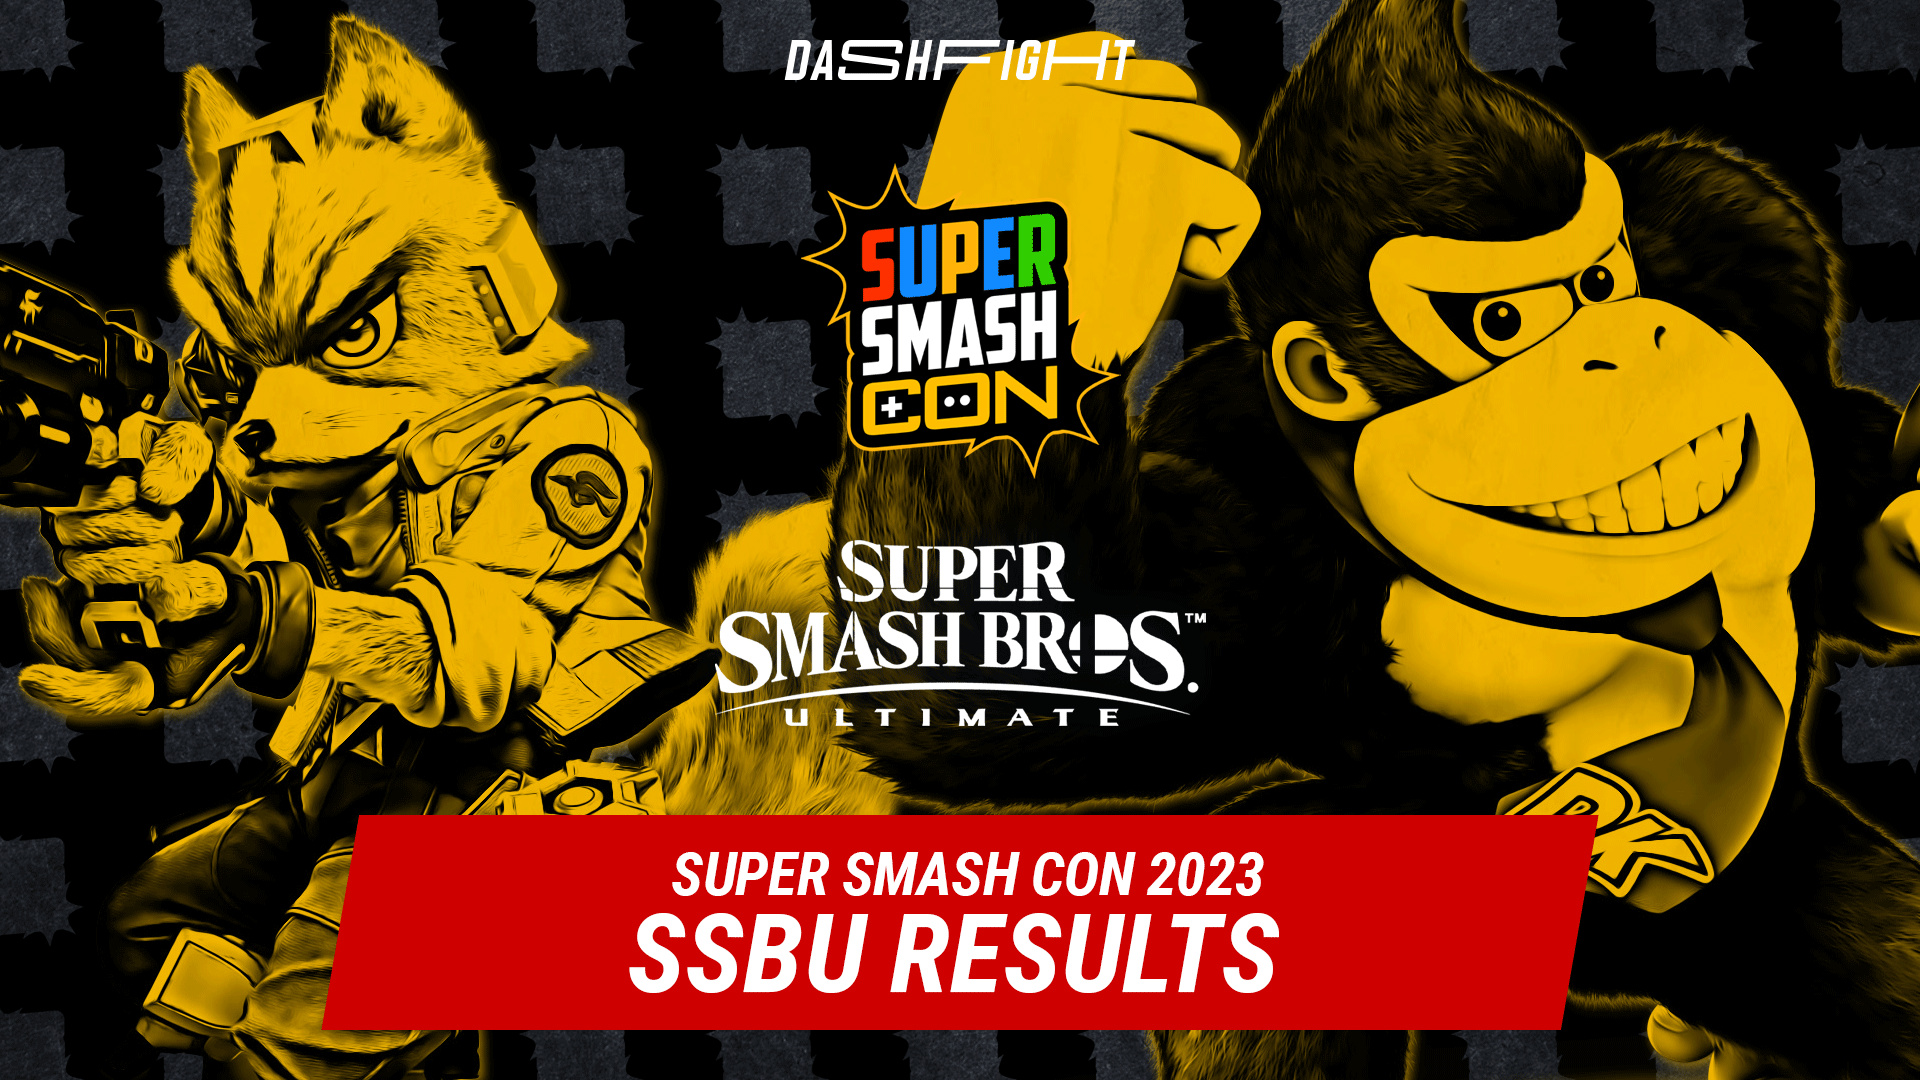 Biggest Super Smash Bros. tournaments in 2023